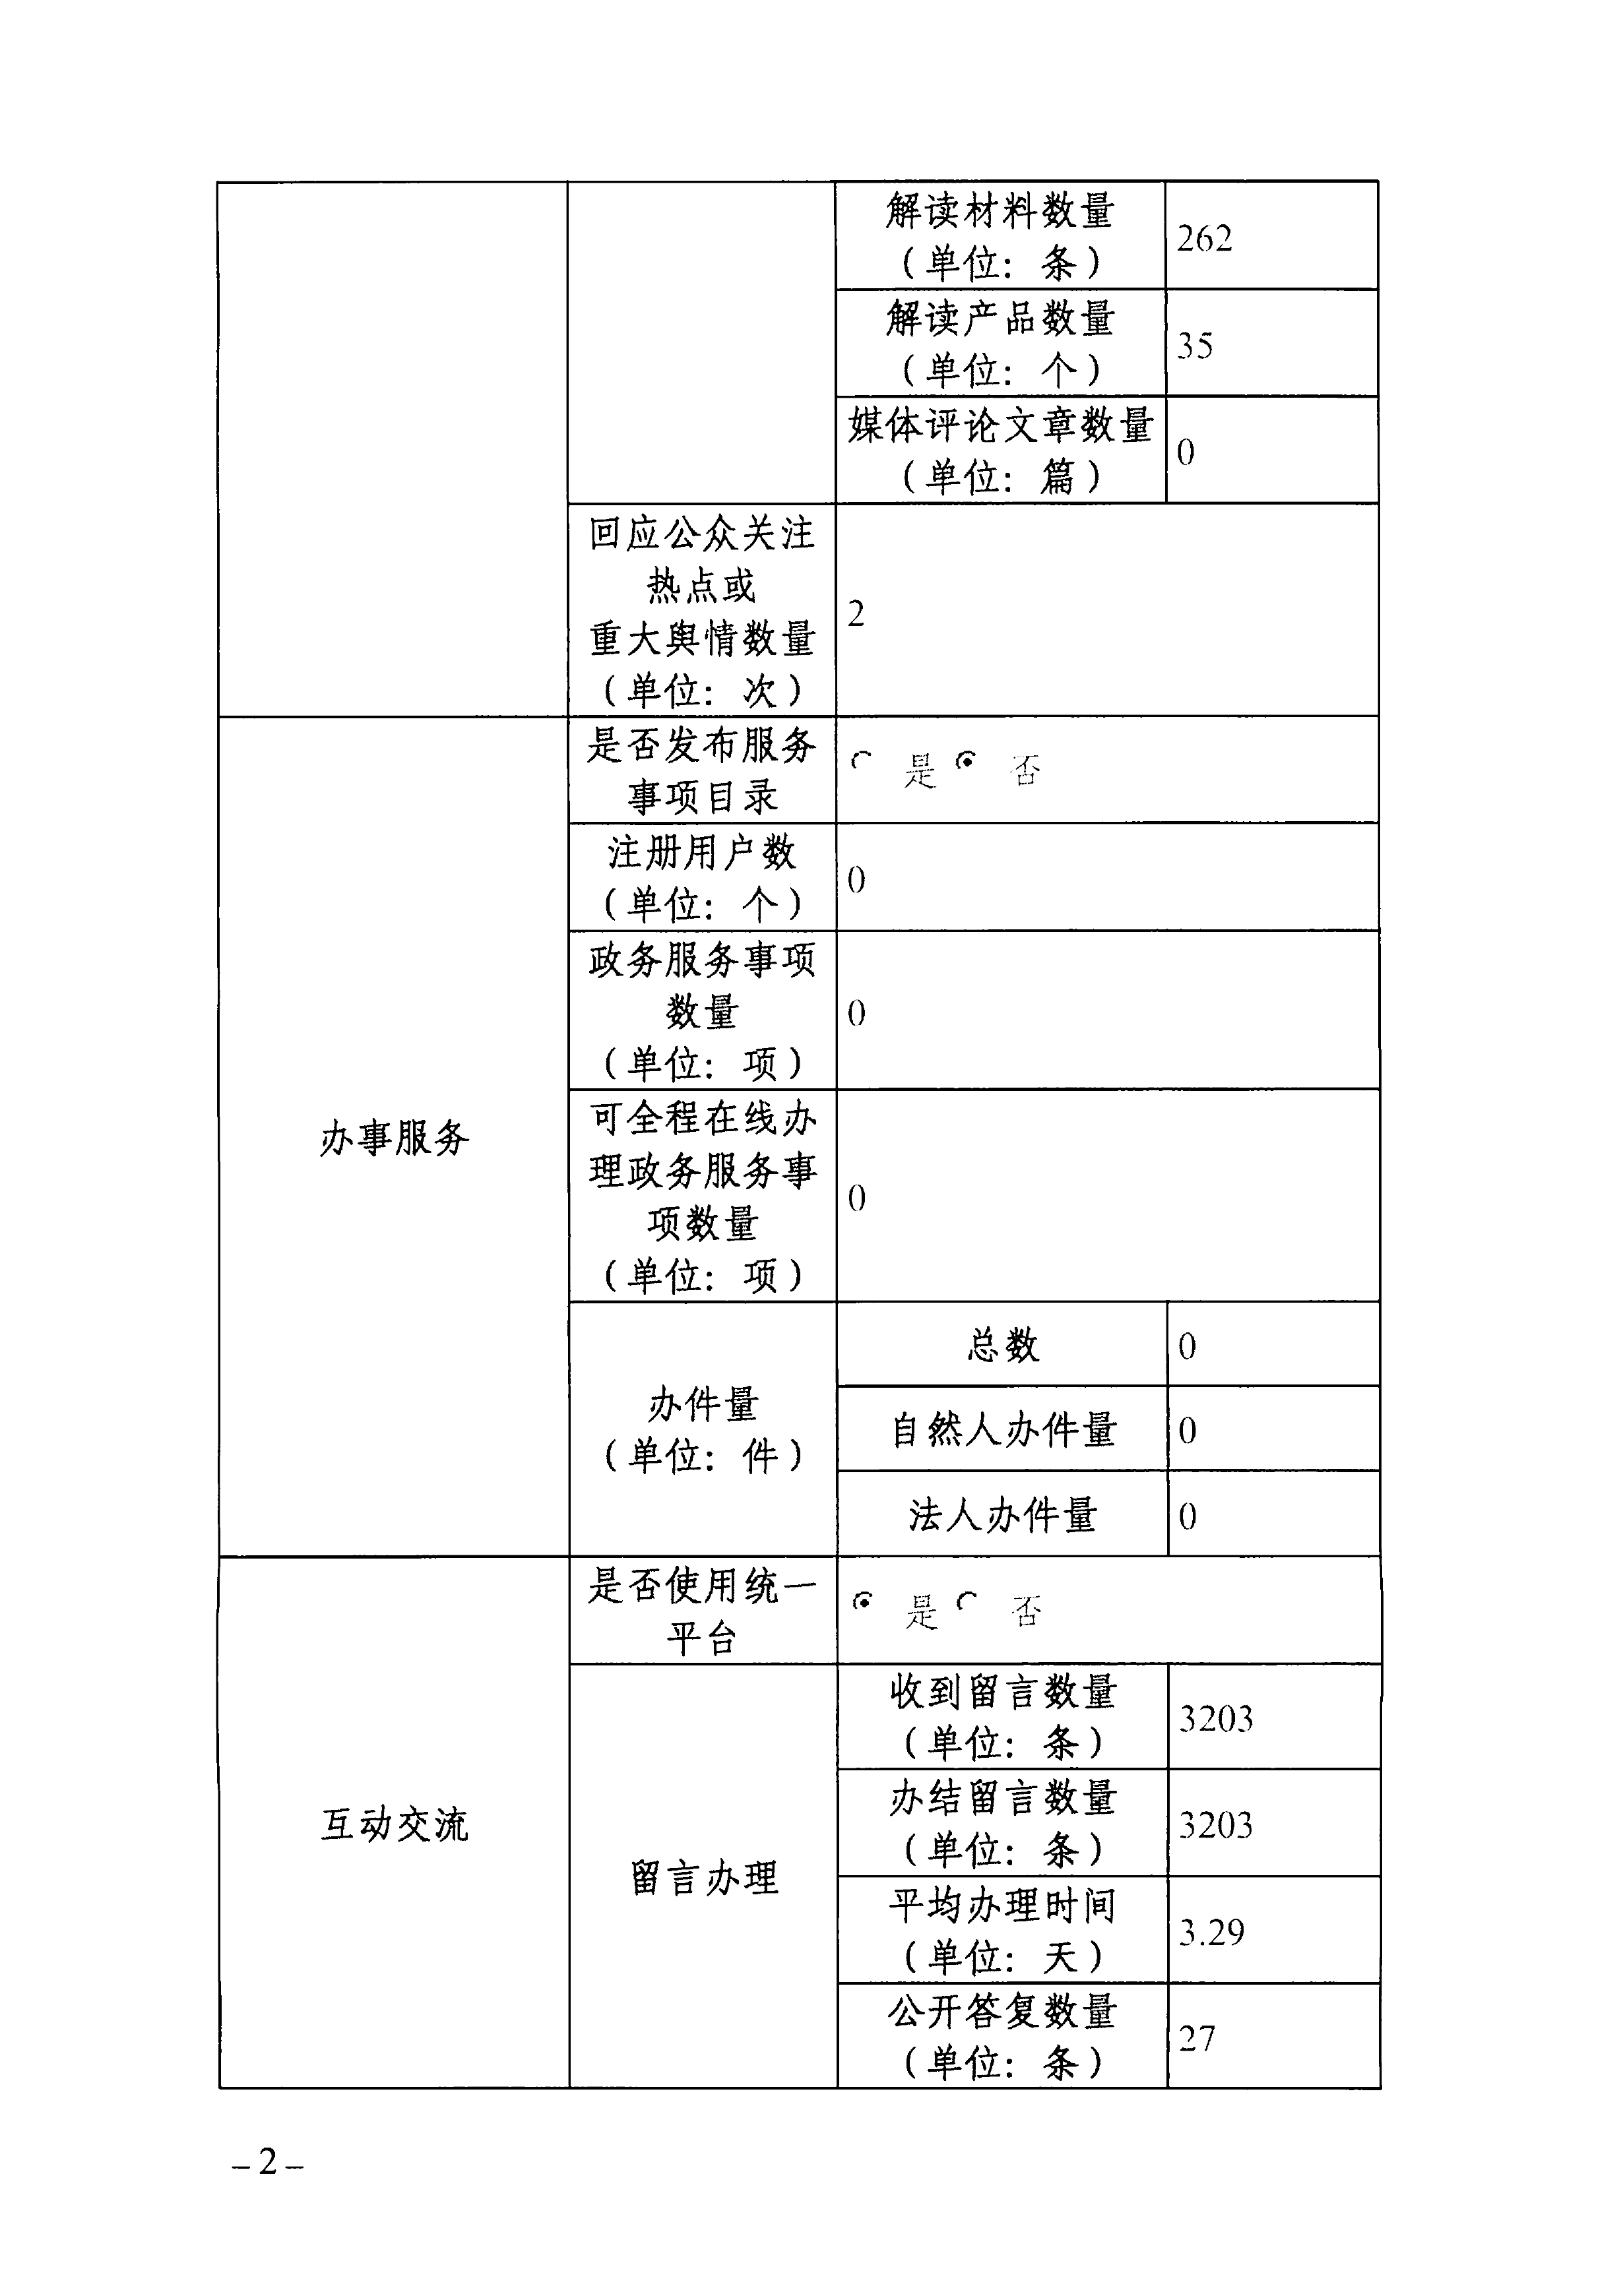 2023年度广东省医疗保障局政府网站工作年度报表-2.png